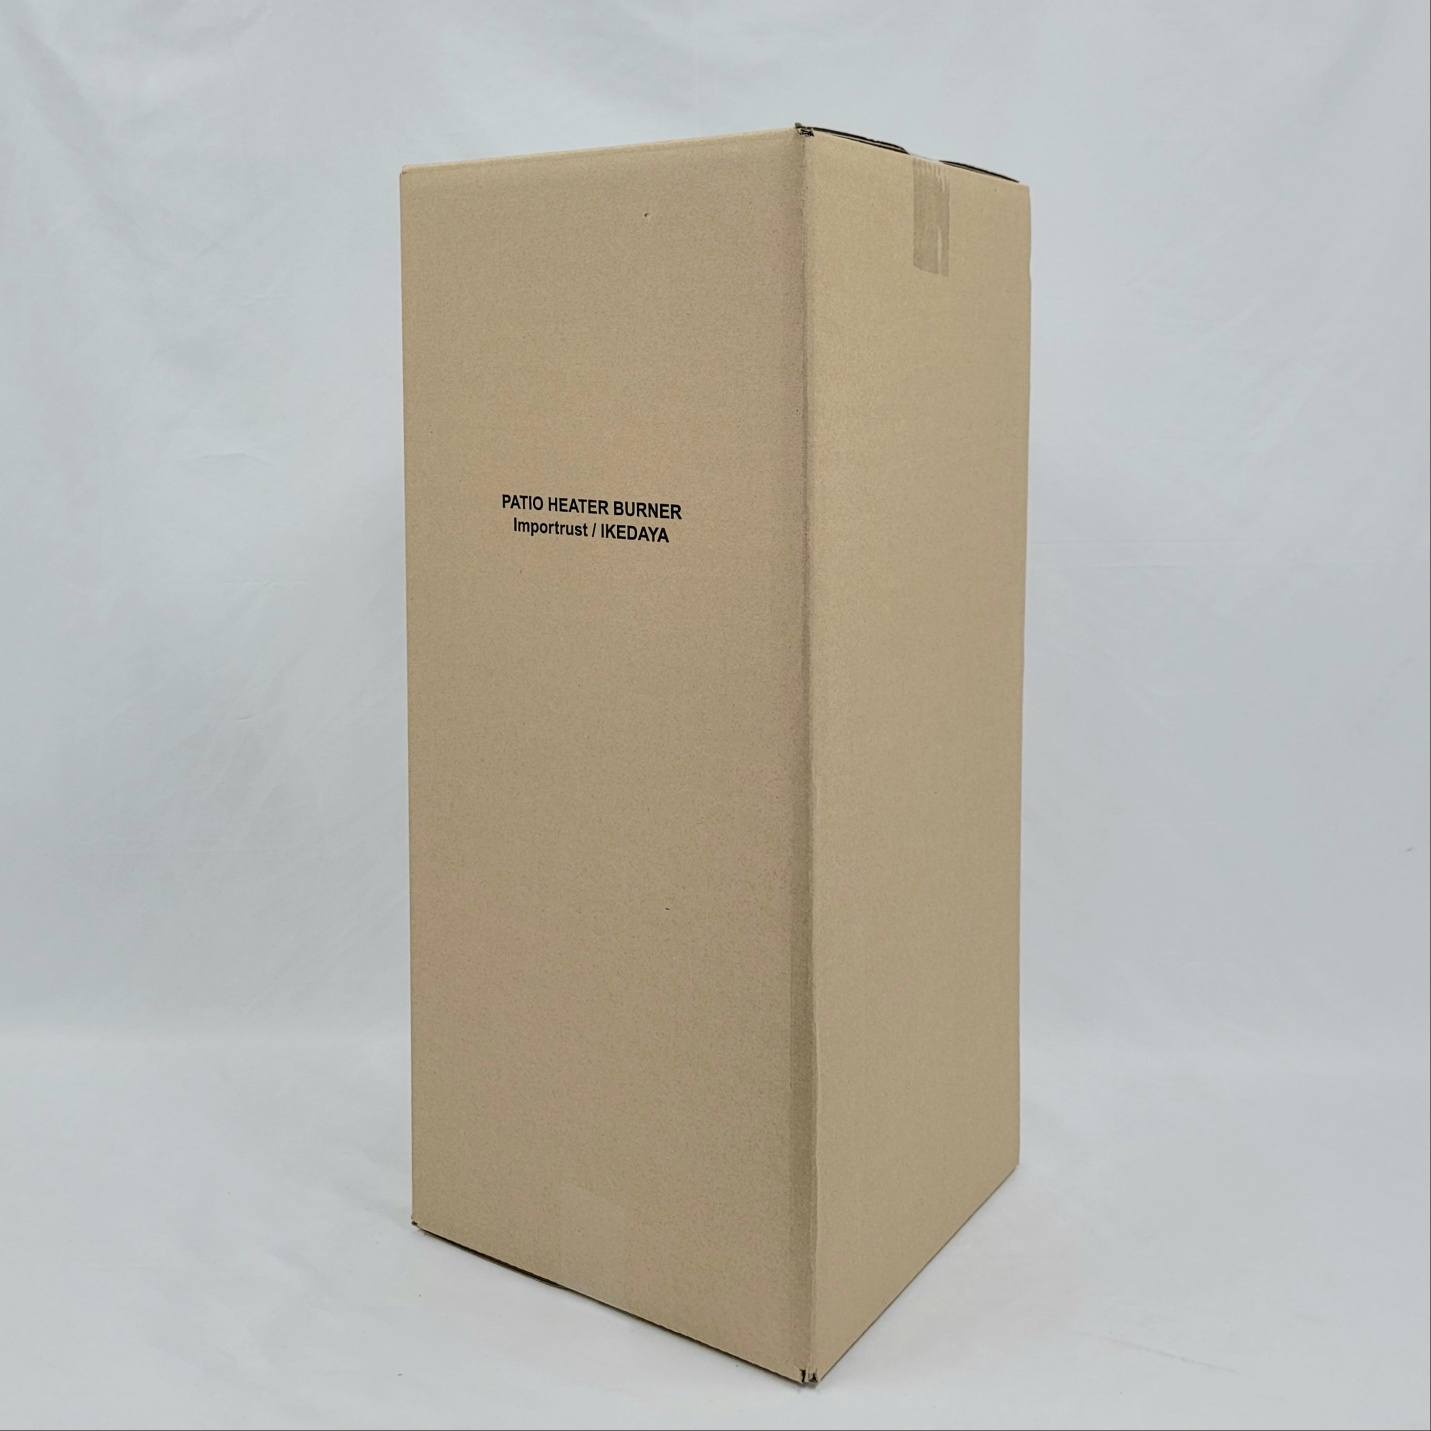 ダンボール箱オーダーメイドの制作事例-商品梱包用箱